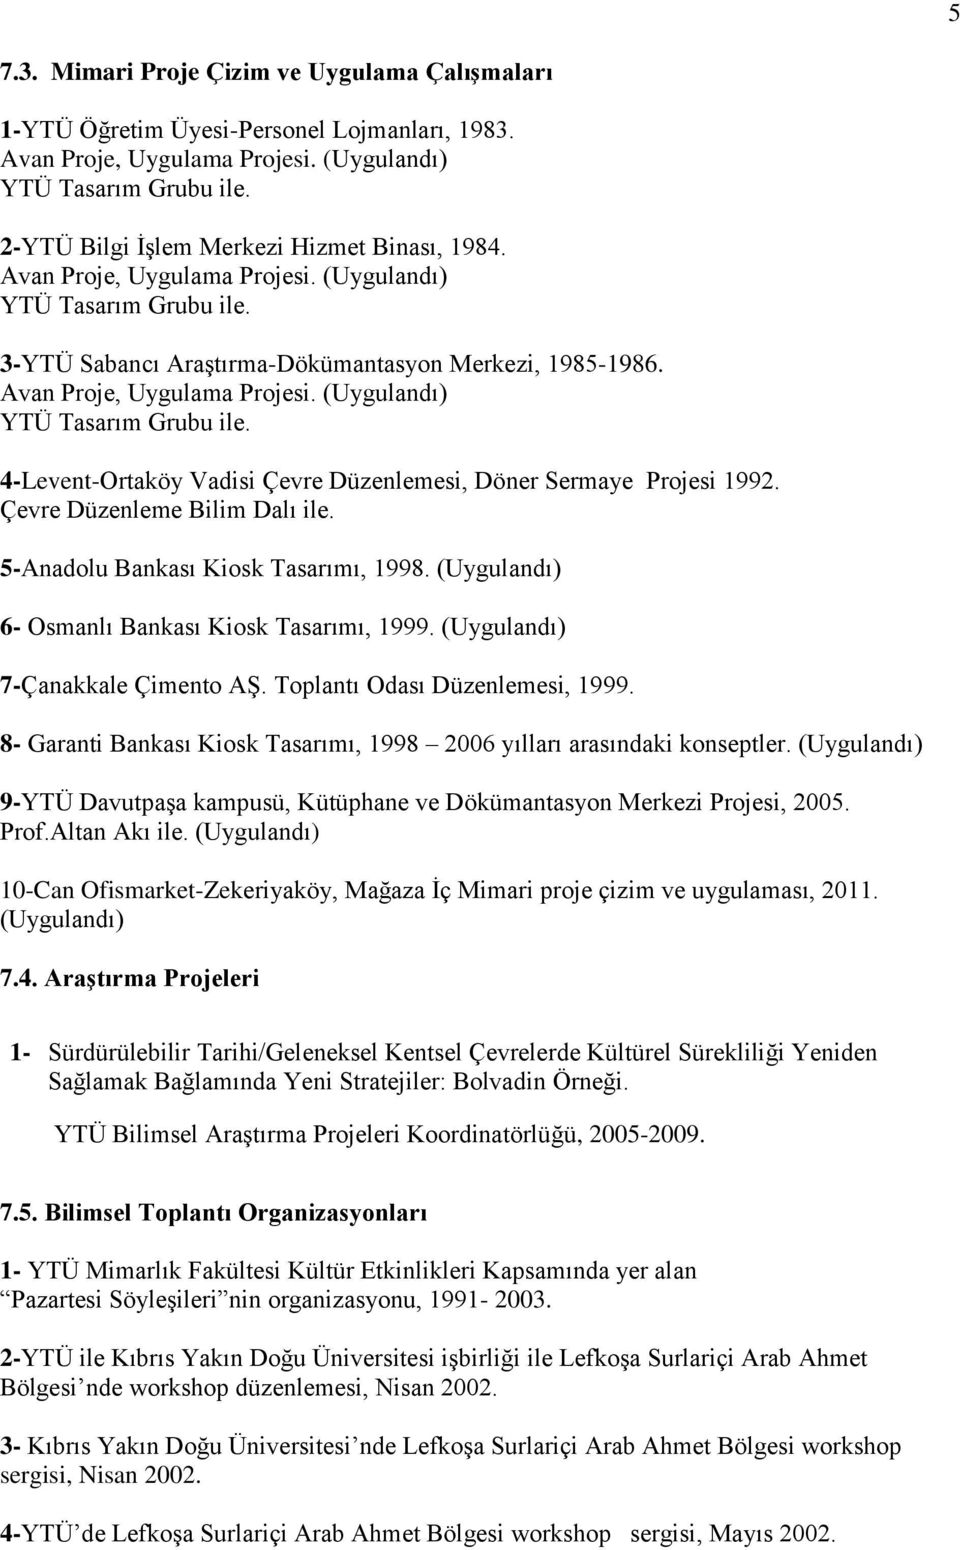 Çevre Düzenleme Bilim Dalı ile. 5-Anadolu Bankası Kiosk Tasarımı, 1998. (Uygulandı) 6- Osmanlı Bankası Kiosk Tasarımı, 1999. (Uygulandı) 7-Çanakkale Çimento AŞ. Toplantı Odası Düzenlemesi, 1999.